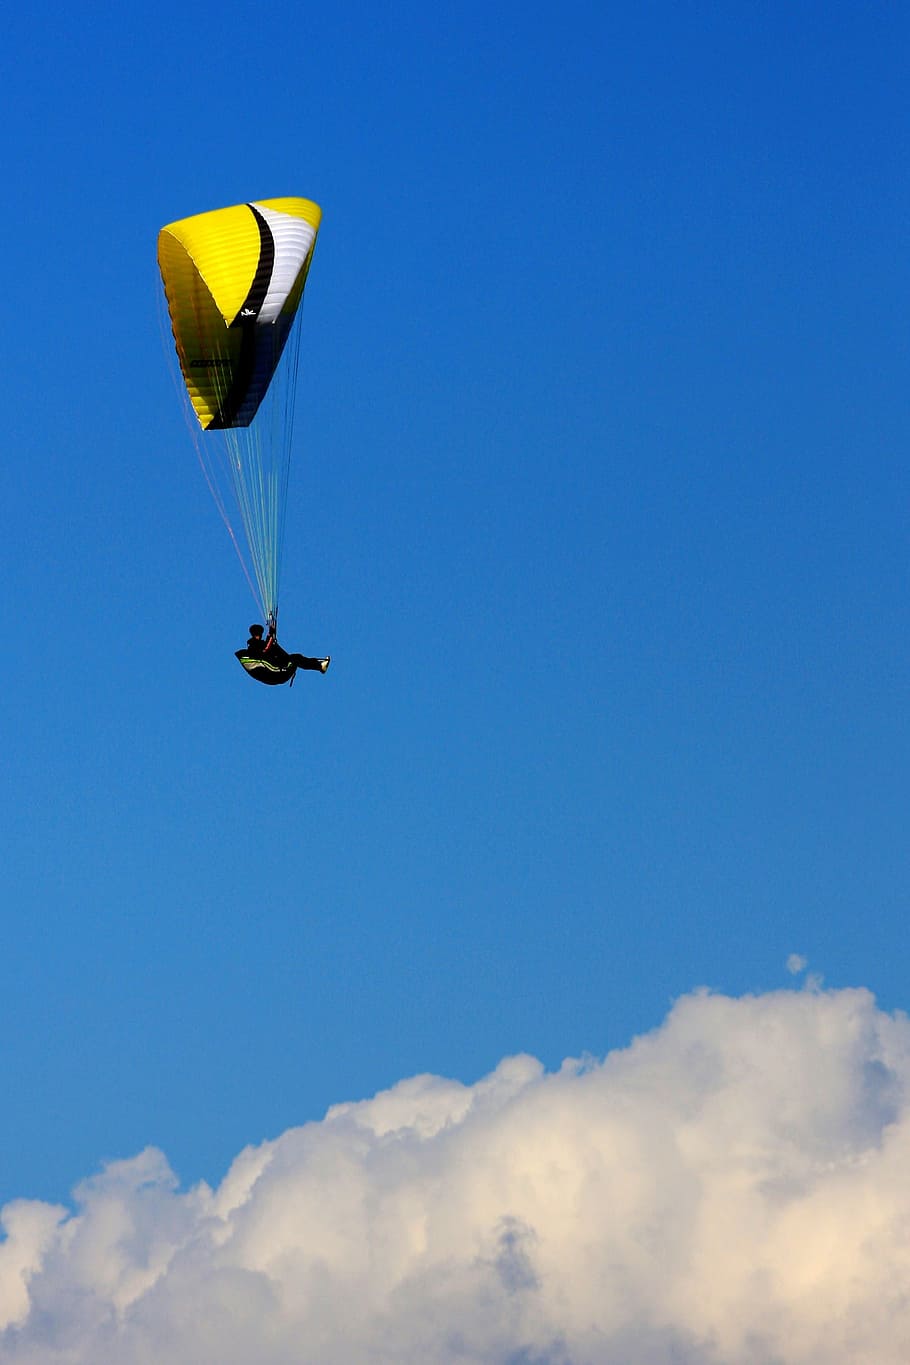 dom, paracaídas, cielo, extremo, nubes, alto, paracaidismo, vuelo, deportes extremos, deporte